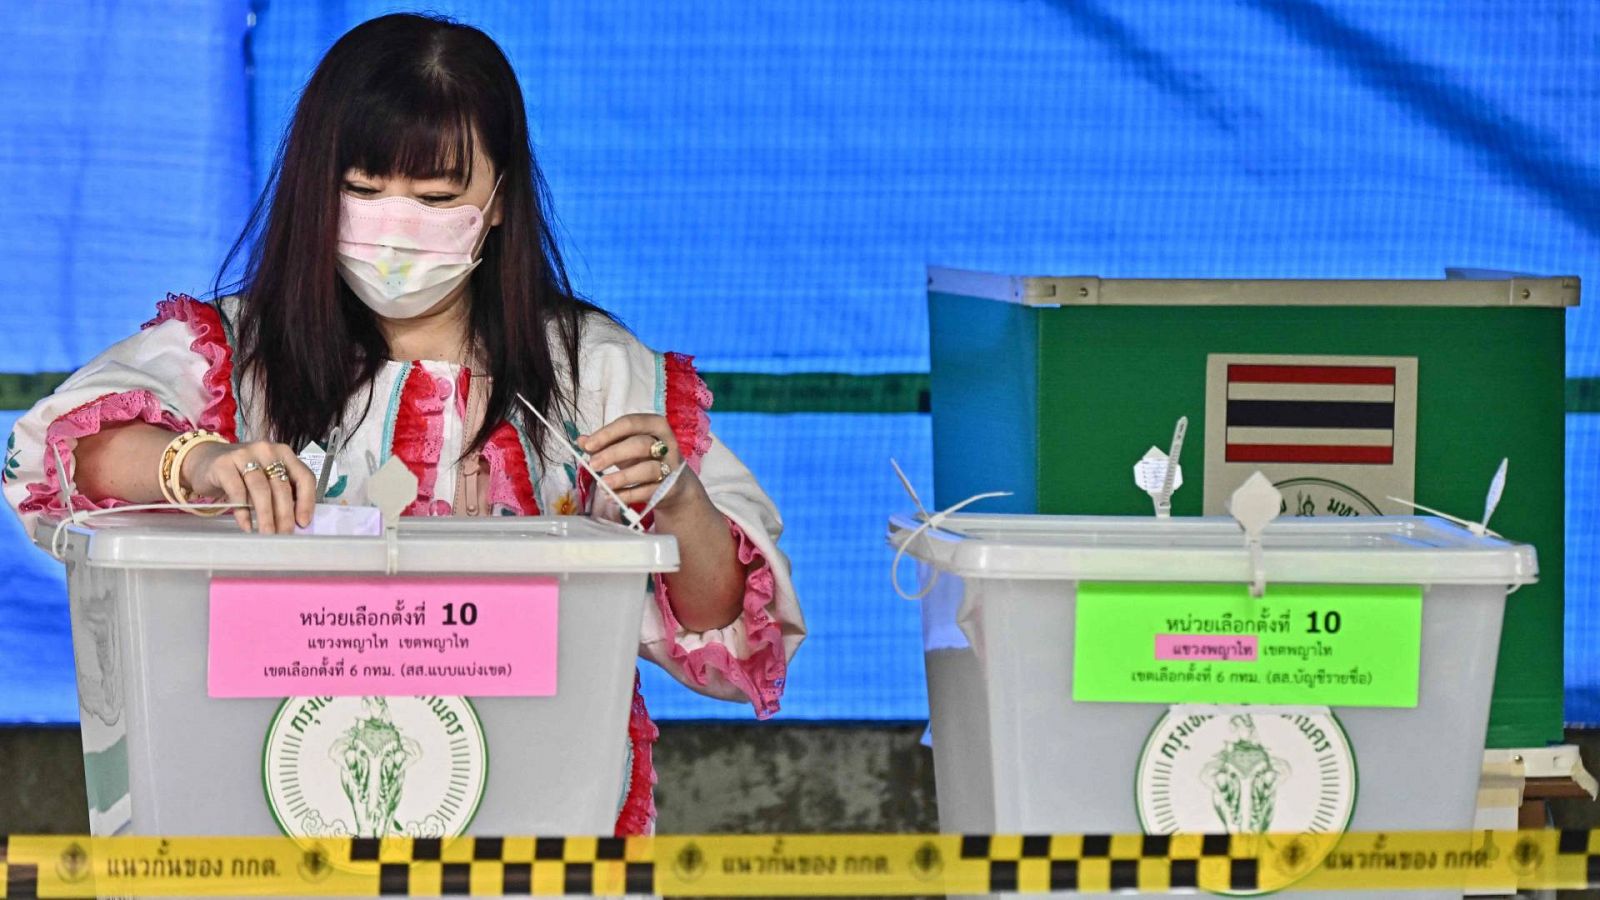 Una mujer votando en un colegio electoral de Bangkok, Tailandia.